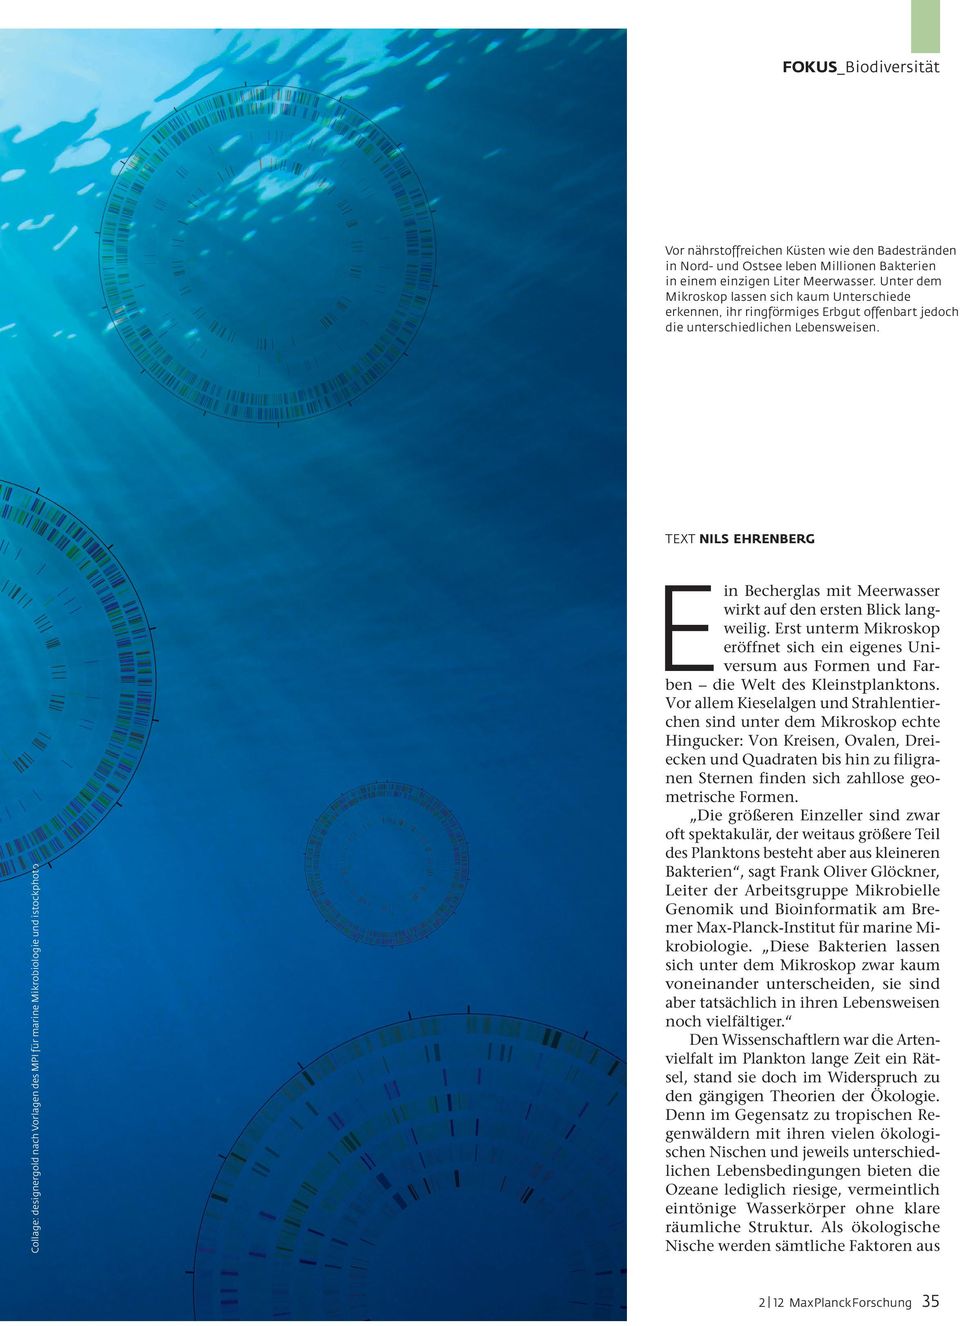 TEXT NILS EHRENBERG Collage: designergold nach Vorlagen des MPI für marine Mikrobiologie und istockphoto t E in Becherglas mit Meerwasser wirkt auf den ersten Blick langweilig.